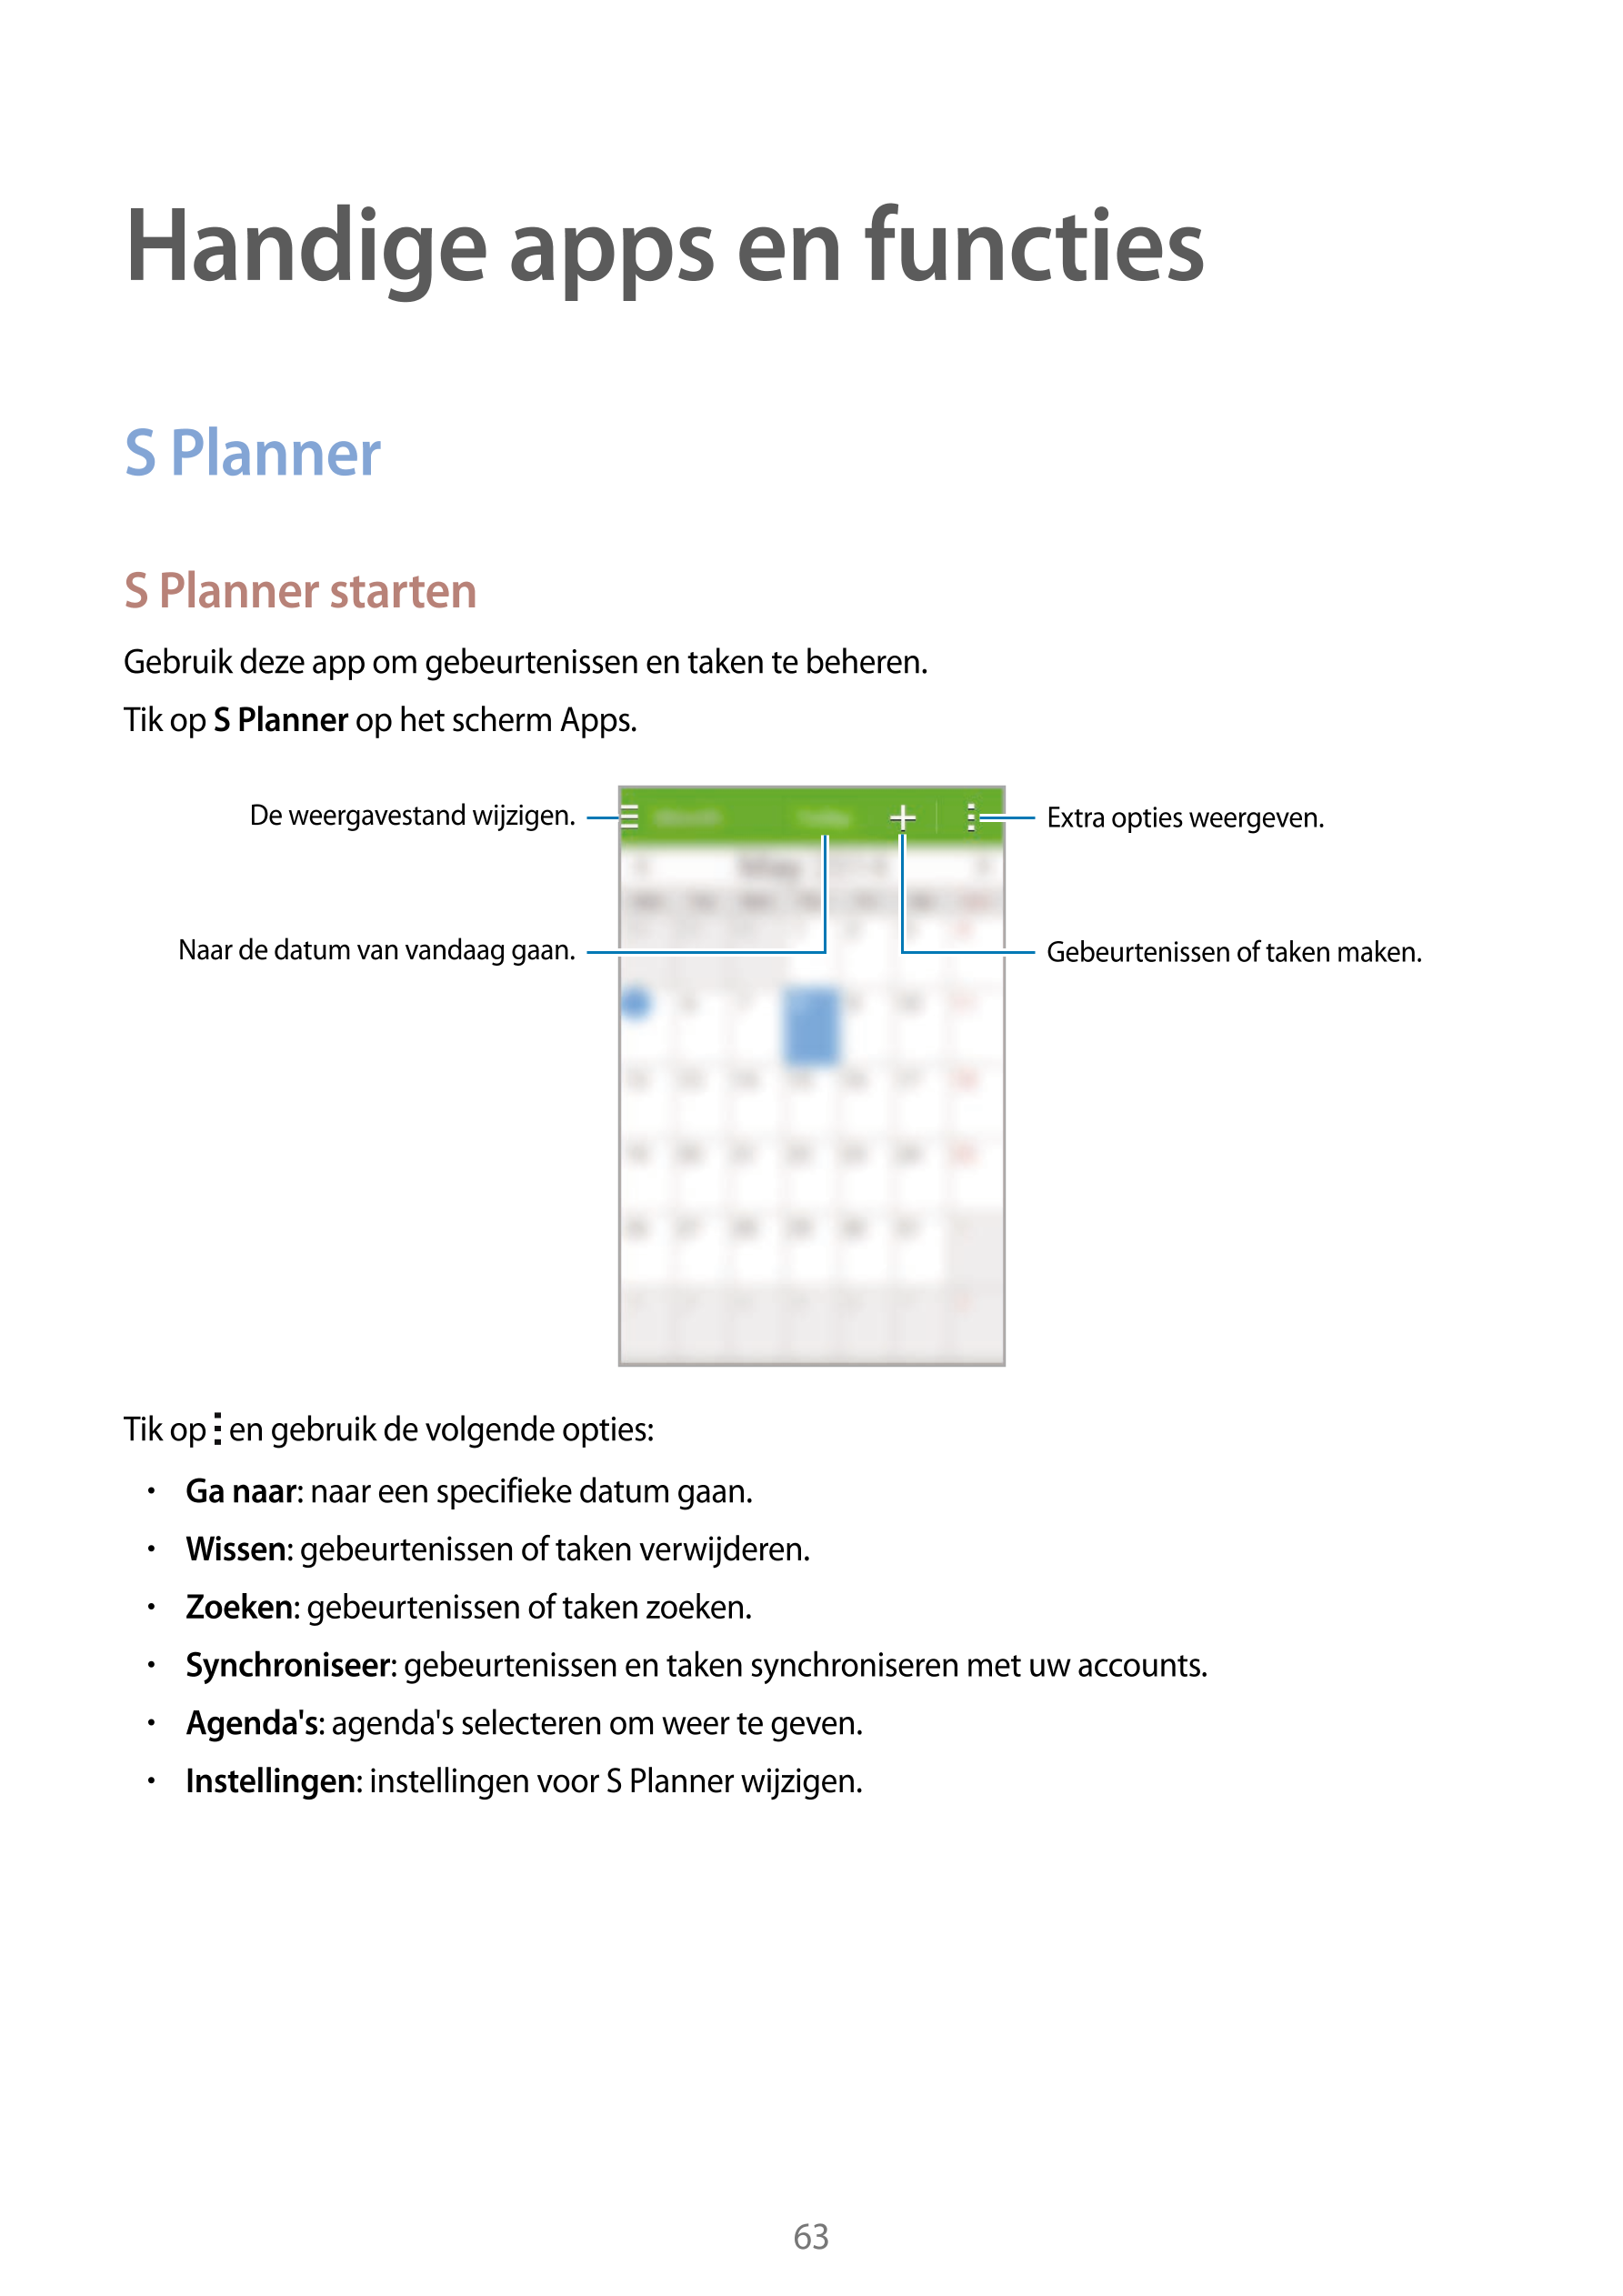 Handige apps en functies
S Planner
S Planner starten
Gebruik deze app om gebeurtenissen en taken te beheren.
Tik op  S Planner o